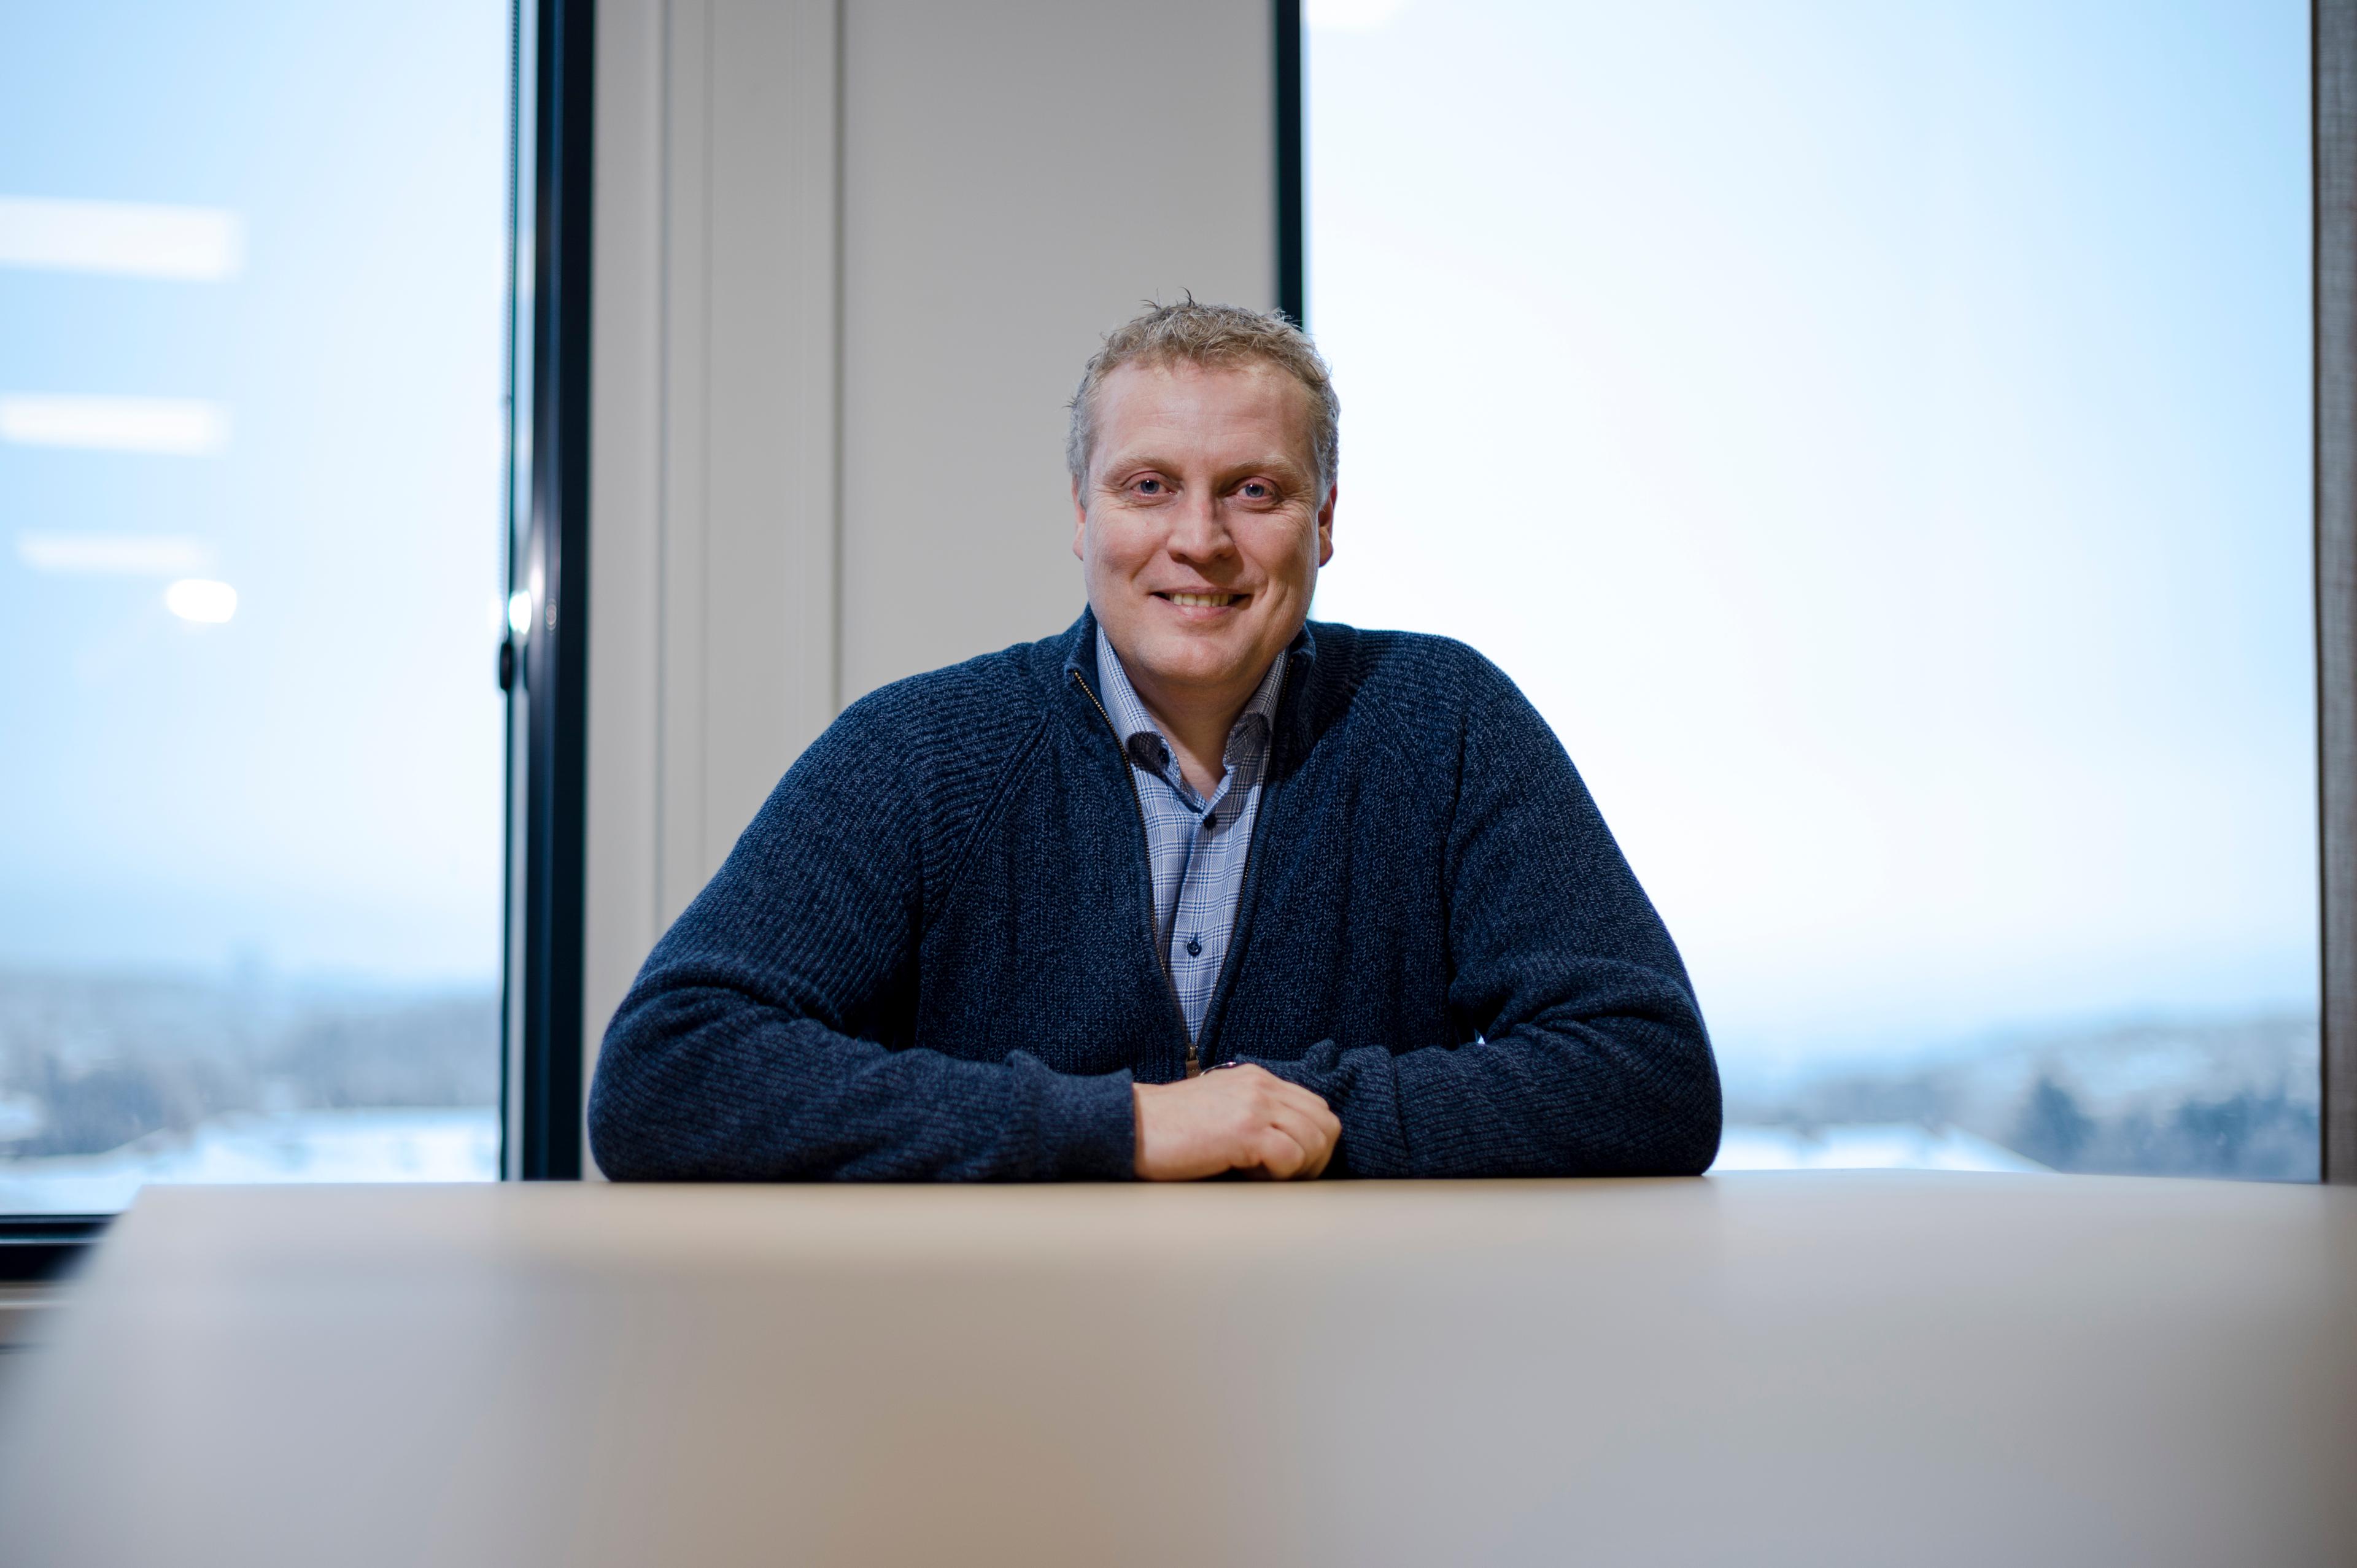 FORNØYD: Økonomisjef Ola Løvaas i AF Energi tror selskapet sparer rundt 40 prosent årlig på bildeling kontra leasing.